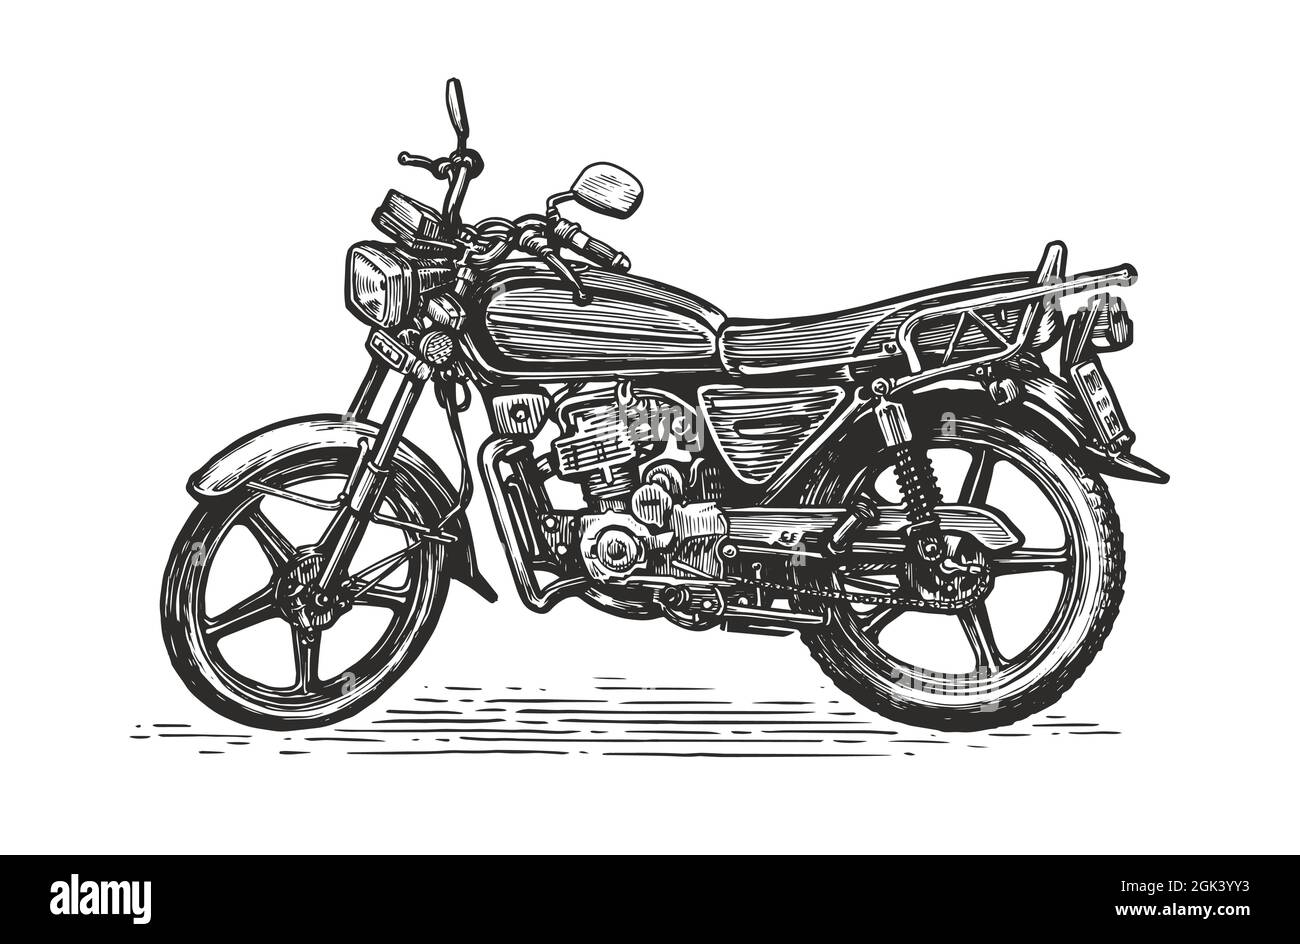 Motorrad isoliert auf weißem Hintergrund. Handgezeichnete Skizze eines Motorrads. Vektorgrafik Stock Vektor